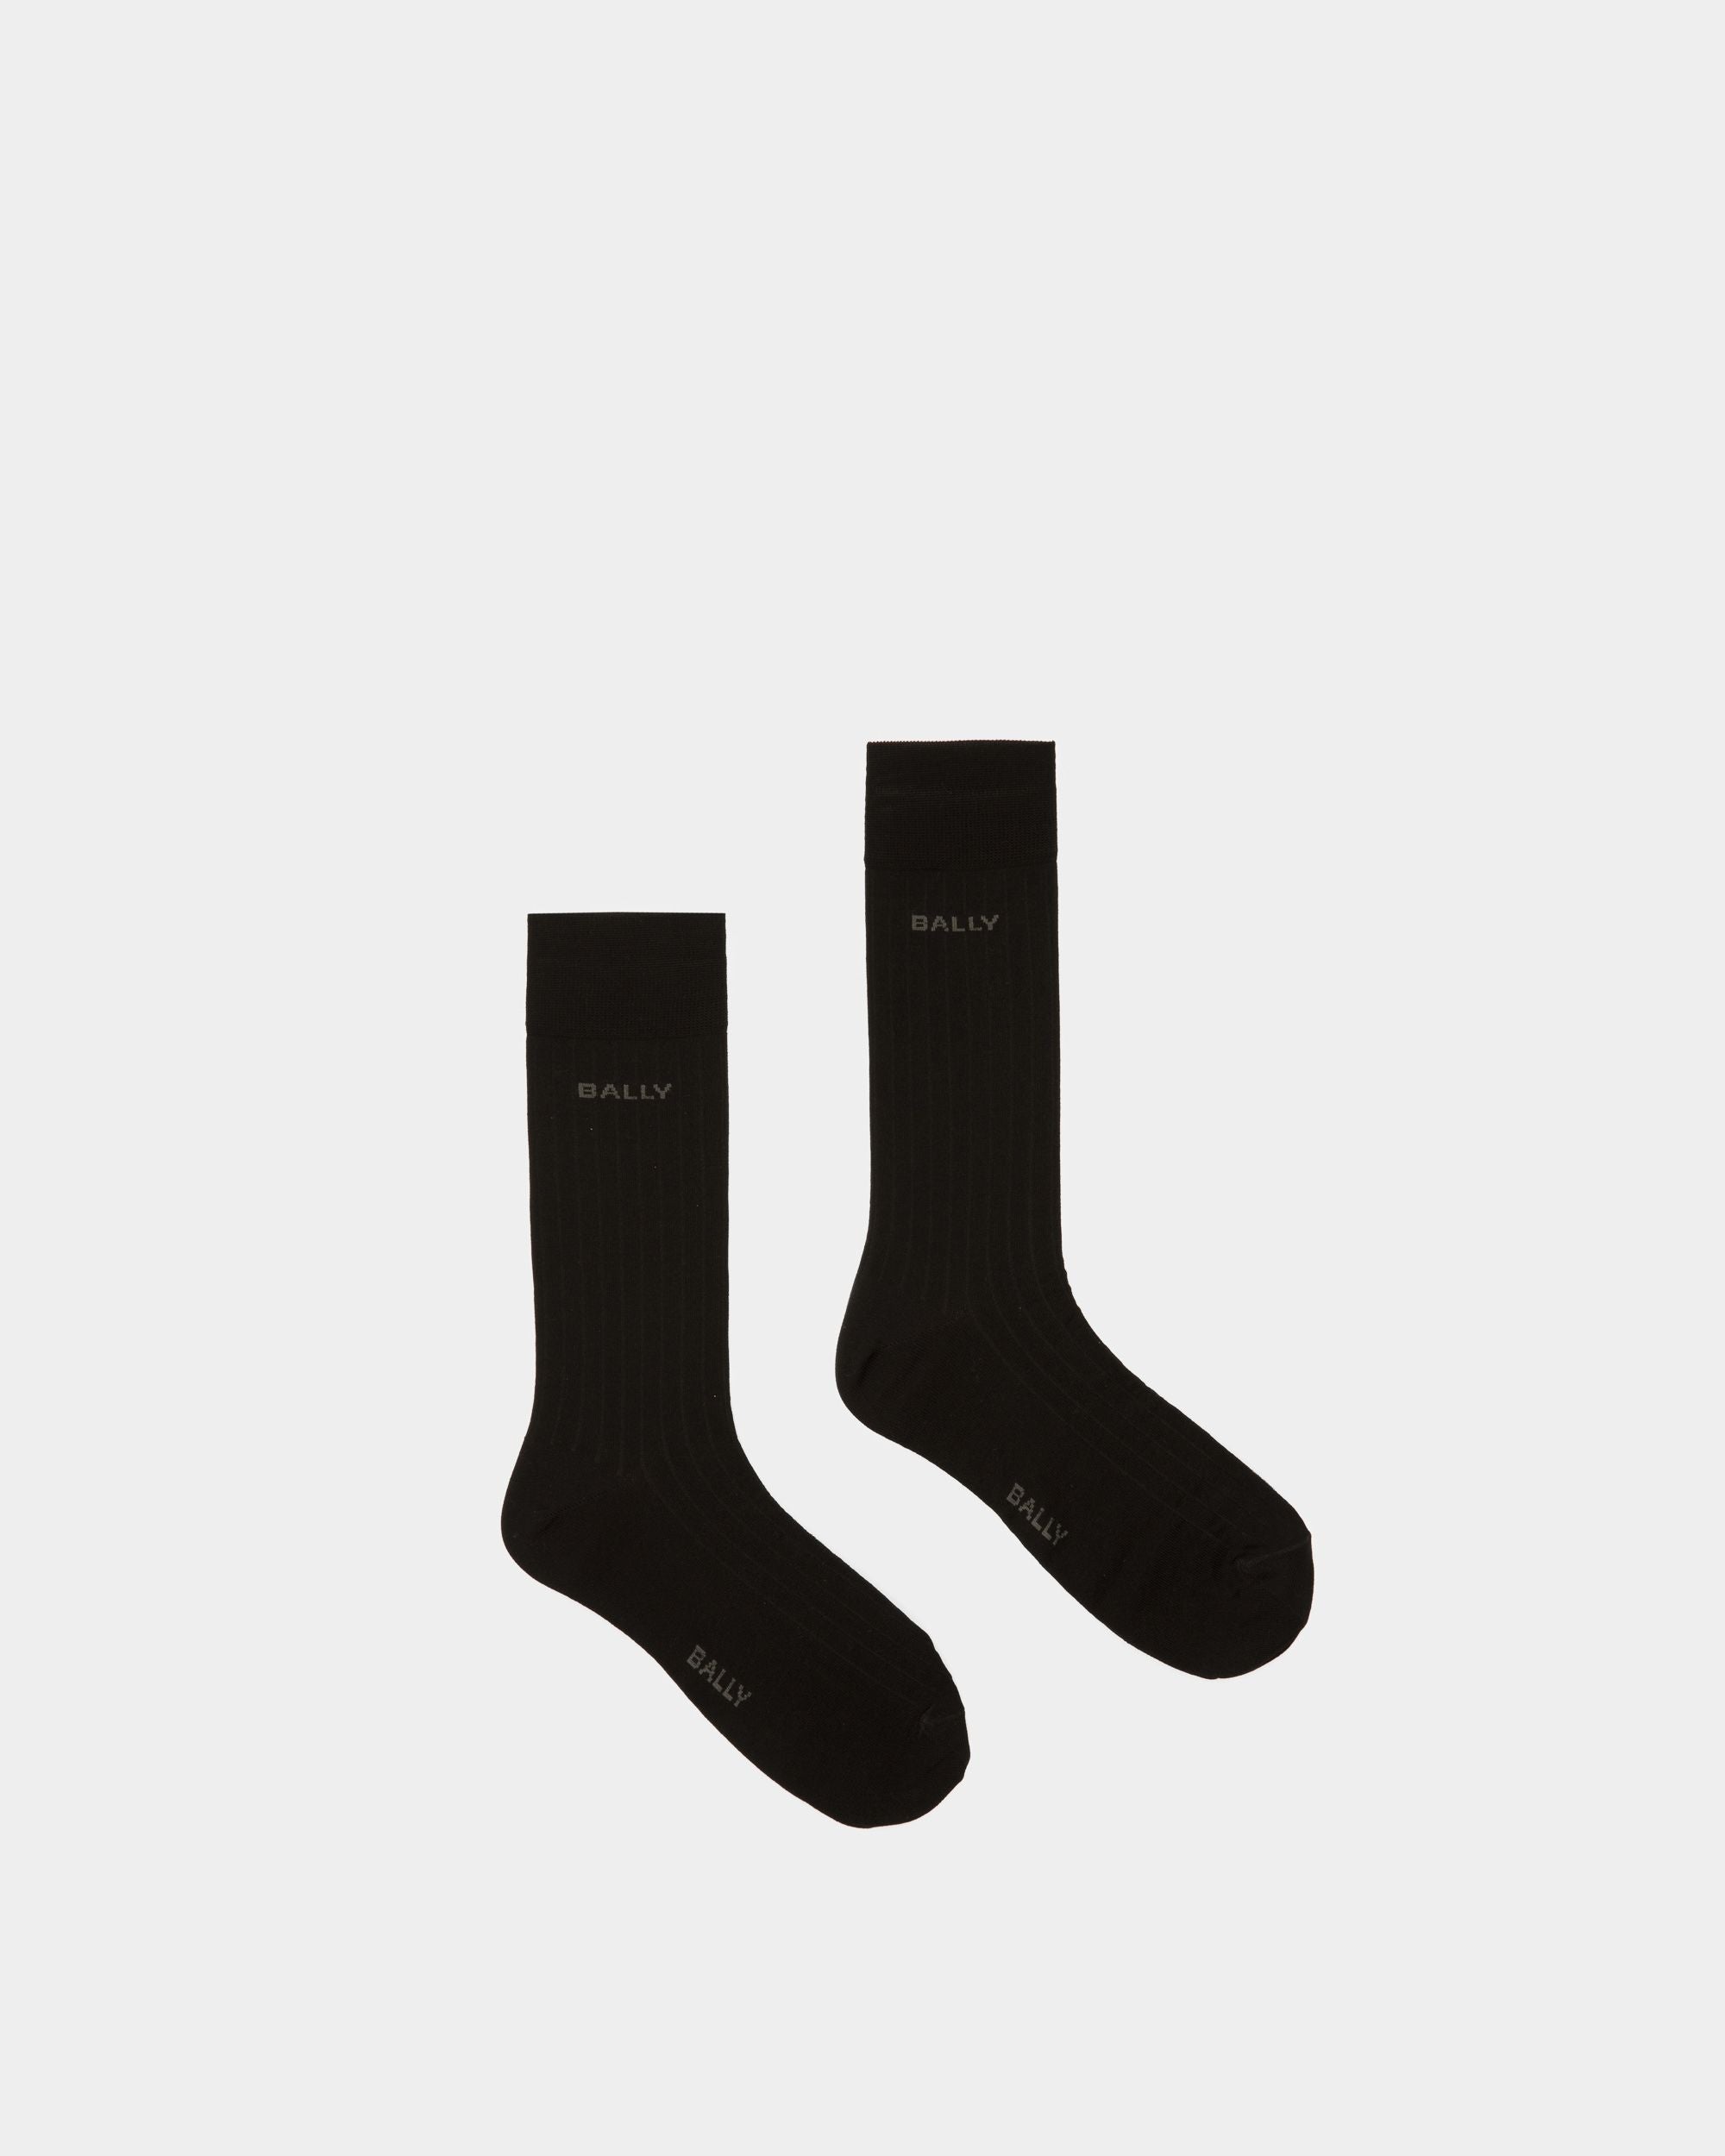 Chaussettes à rayures avec logo | Chaussettes pour homme | Coton mélangé noir | Bally | Still Life Haut